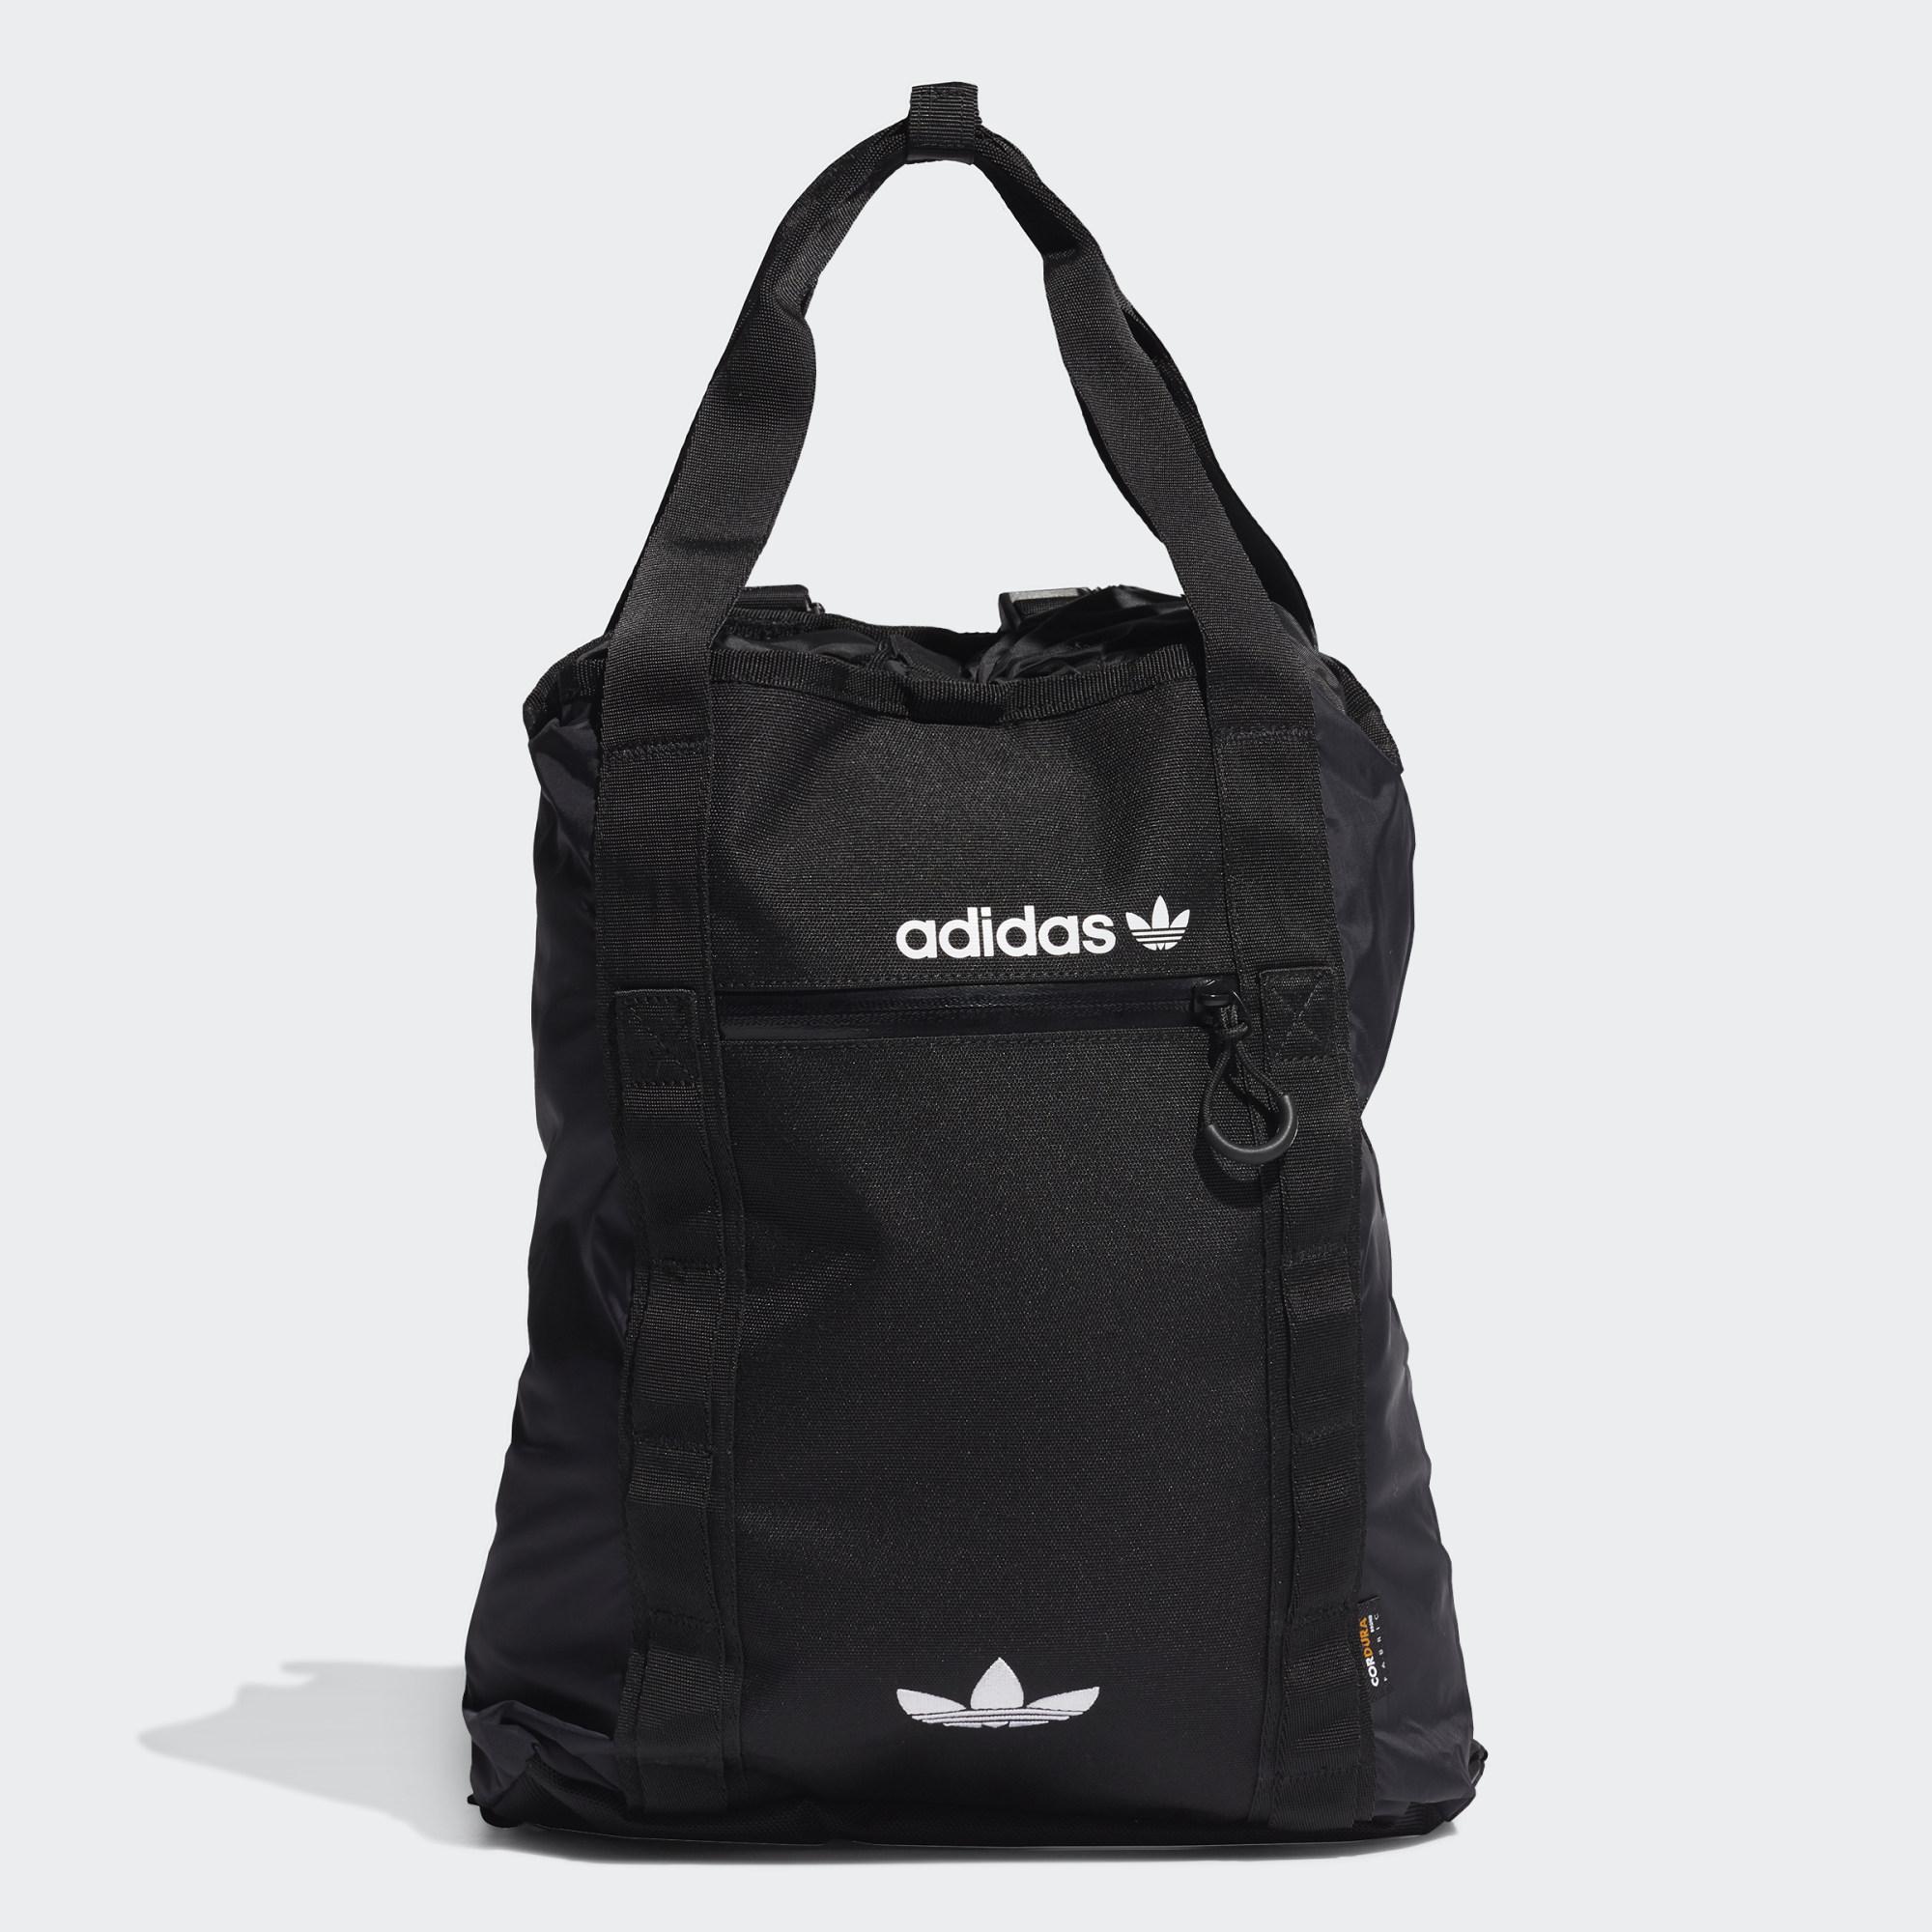 adidas Originals Adventure Cordura Cinch Tote Bag in Black | Lyst